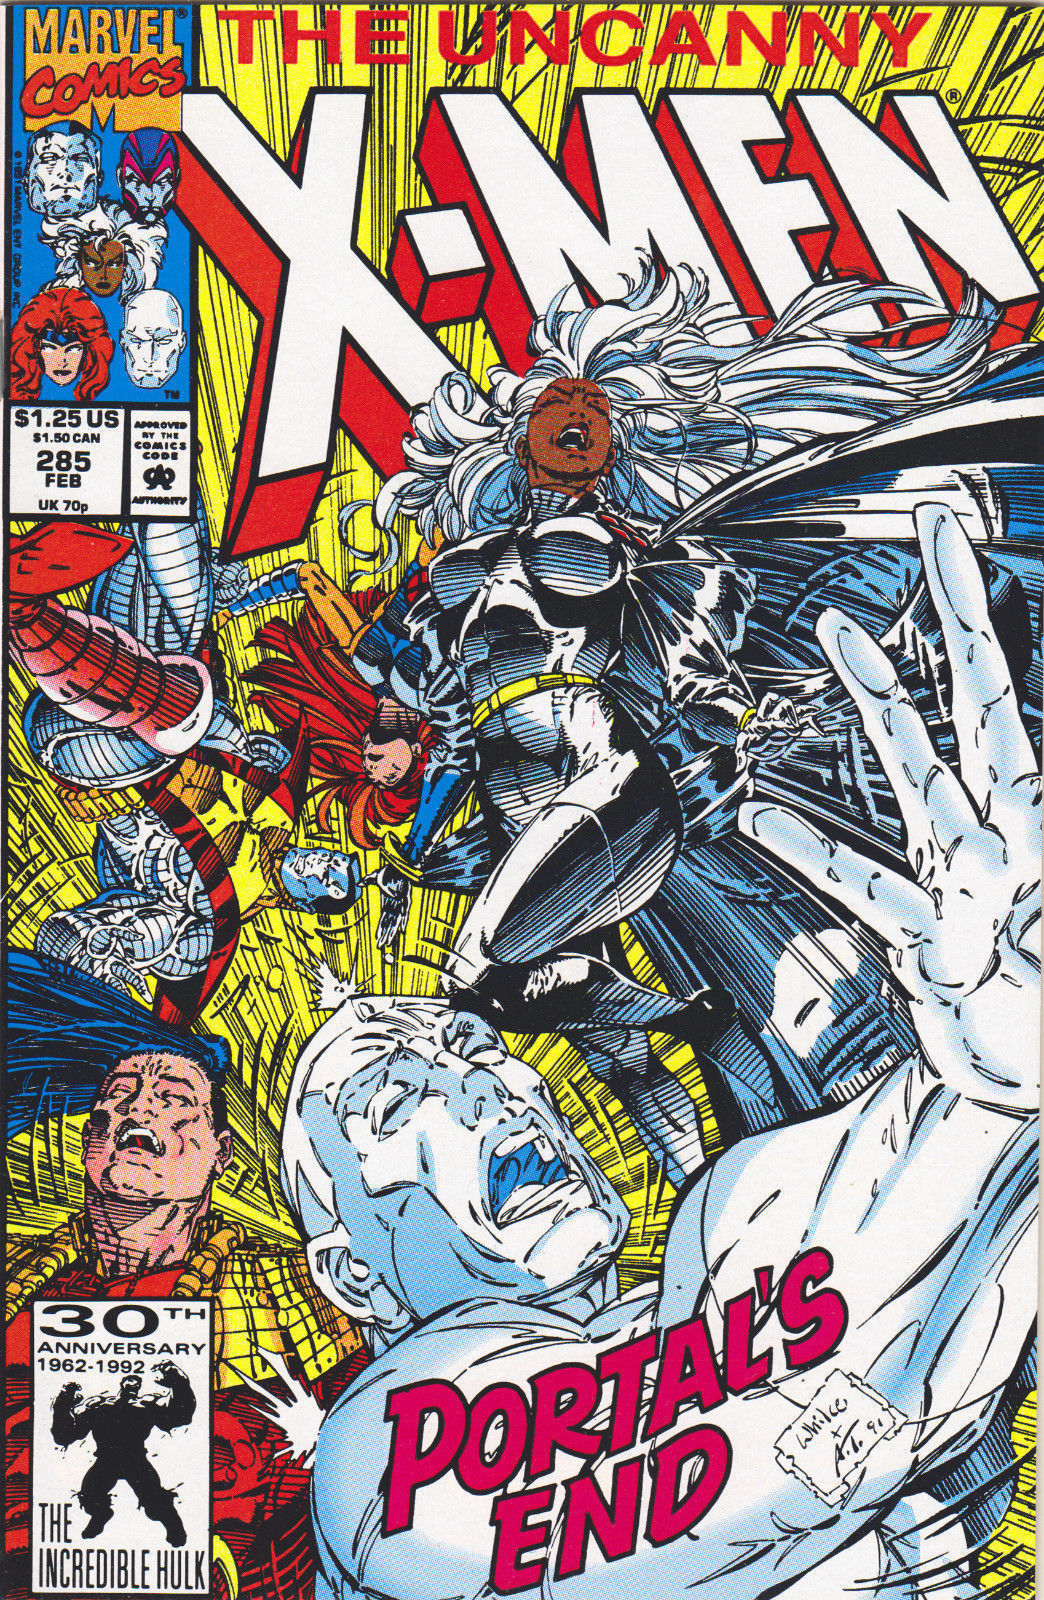 UNCANNY X-MEN #285 (1ST PRINT) COMIC BOOK ~ Whilce Portacio Art ~ Marvel Comics